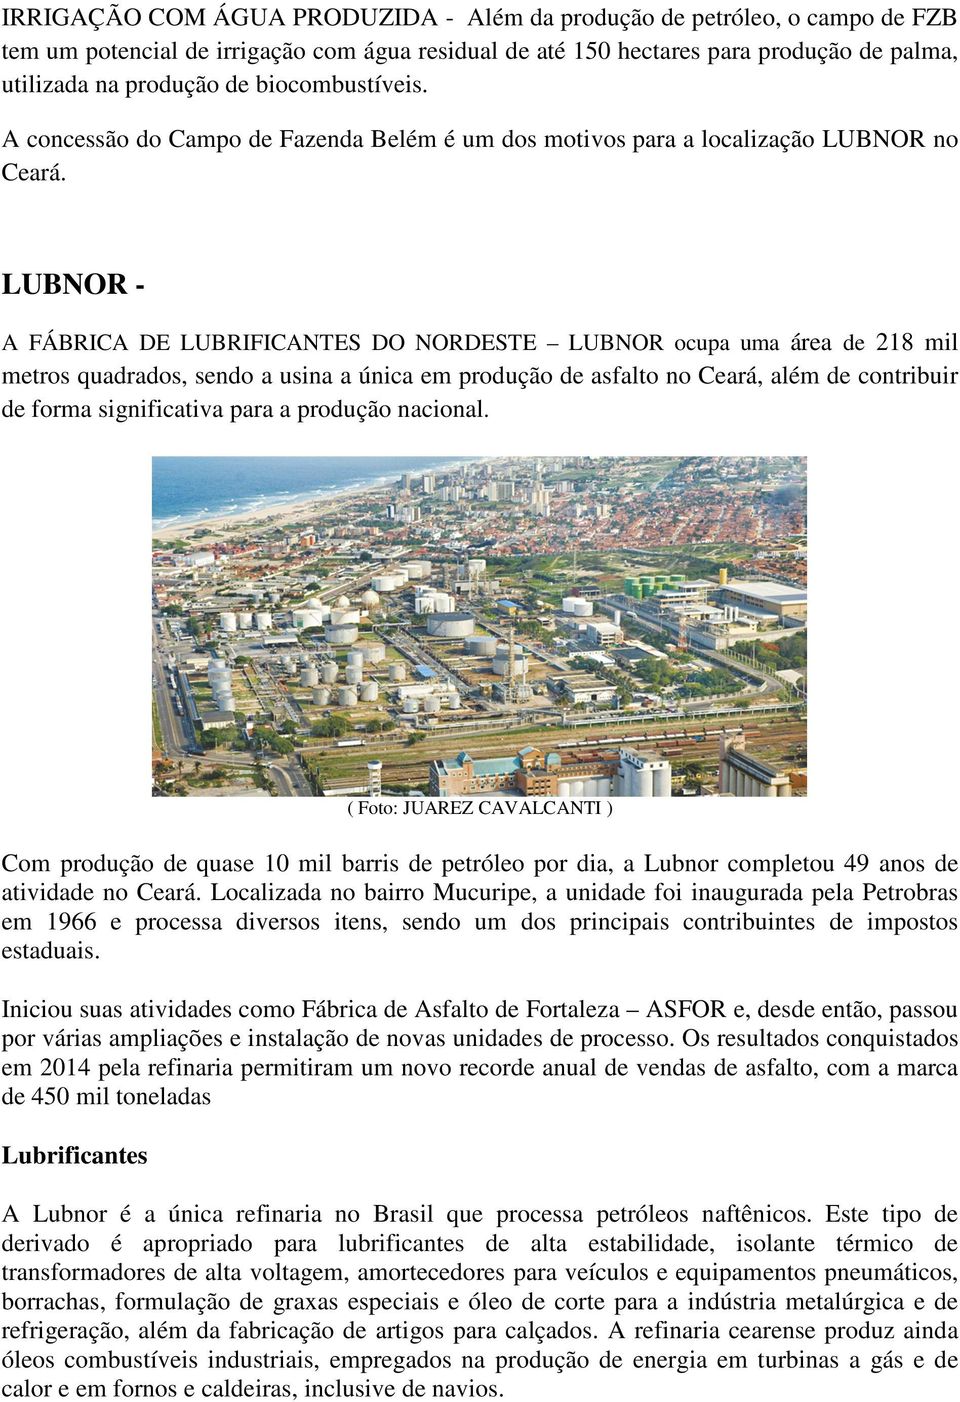 LUBNOR - A FÁBRICA DE LUBRIFICANTES DO NORDESTE LUBNOR ocupa uma área de 218 mil metros quadrados, sendo a usina a única em produção de asfalto no Ceará, além de contribuir de forma significativa